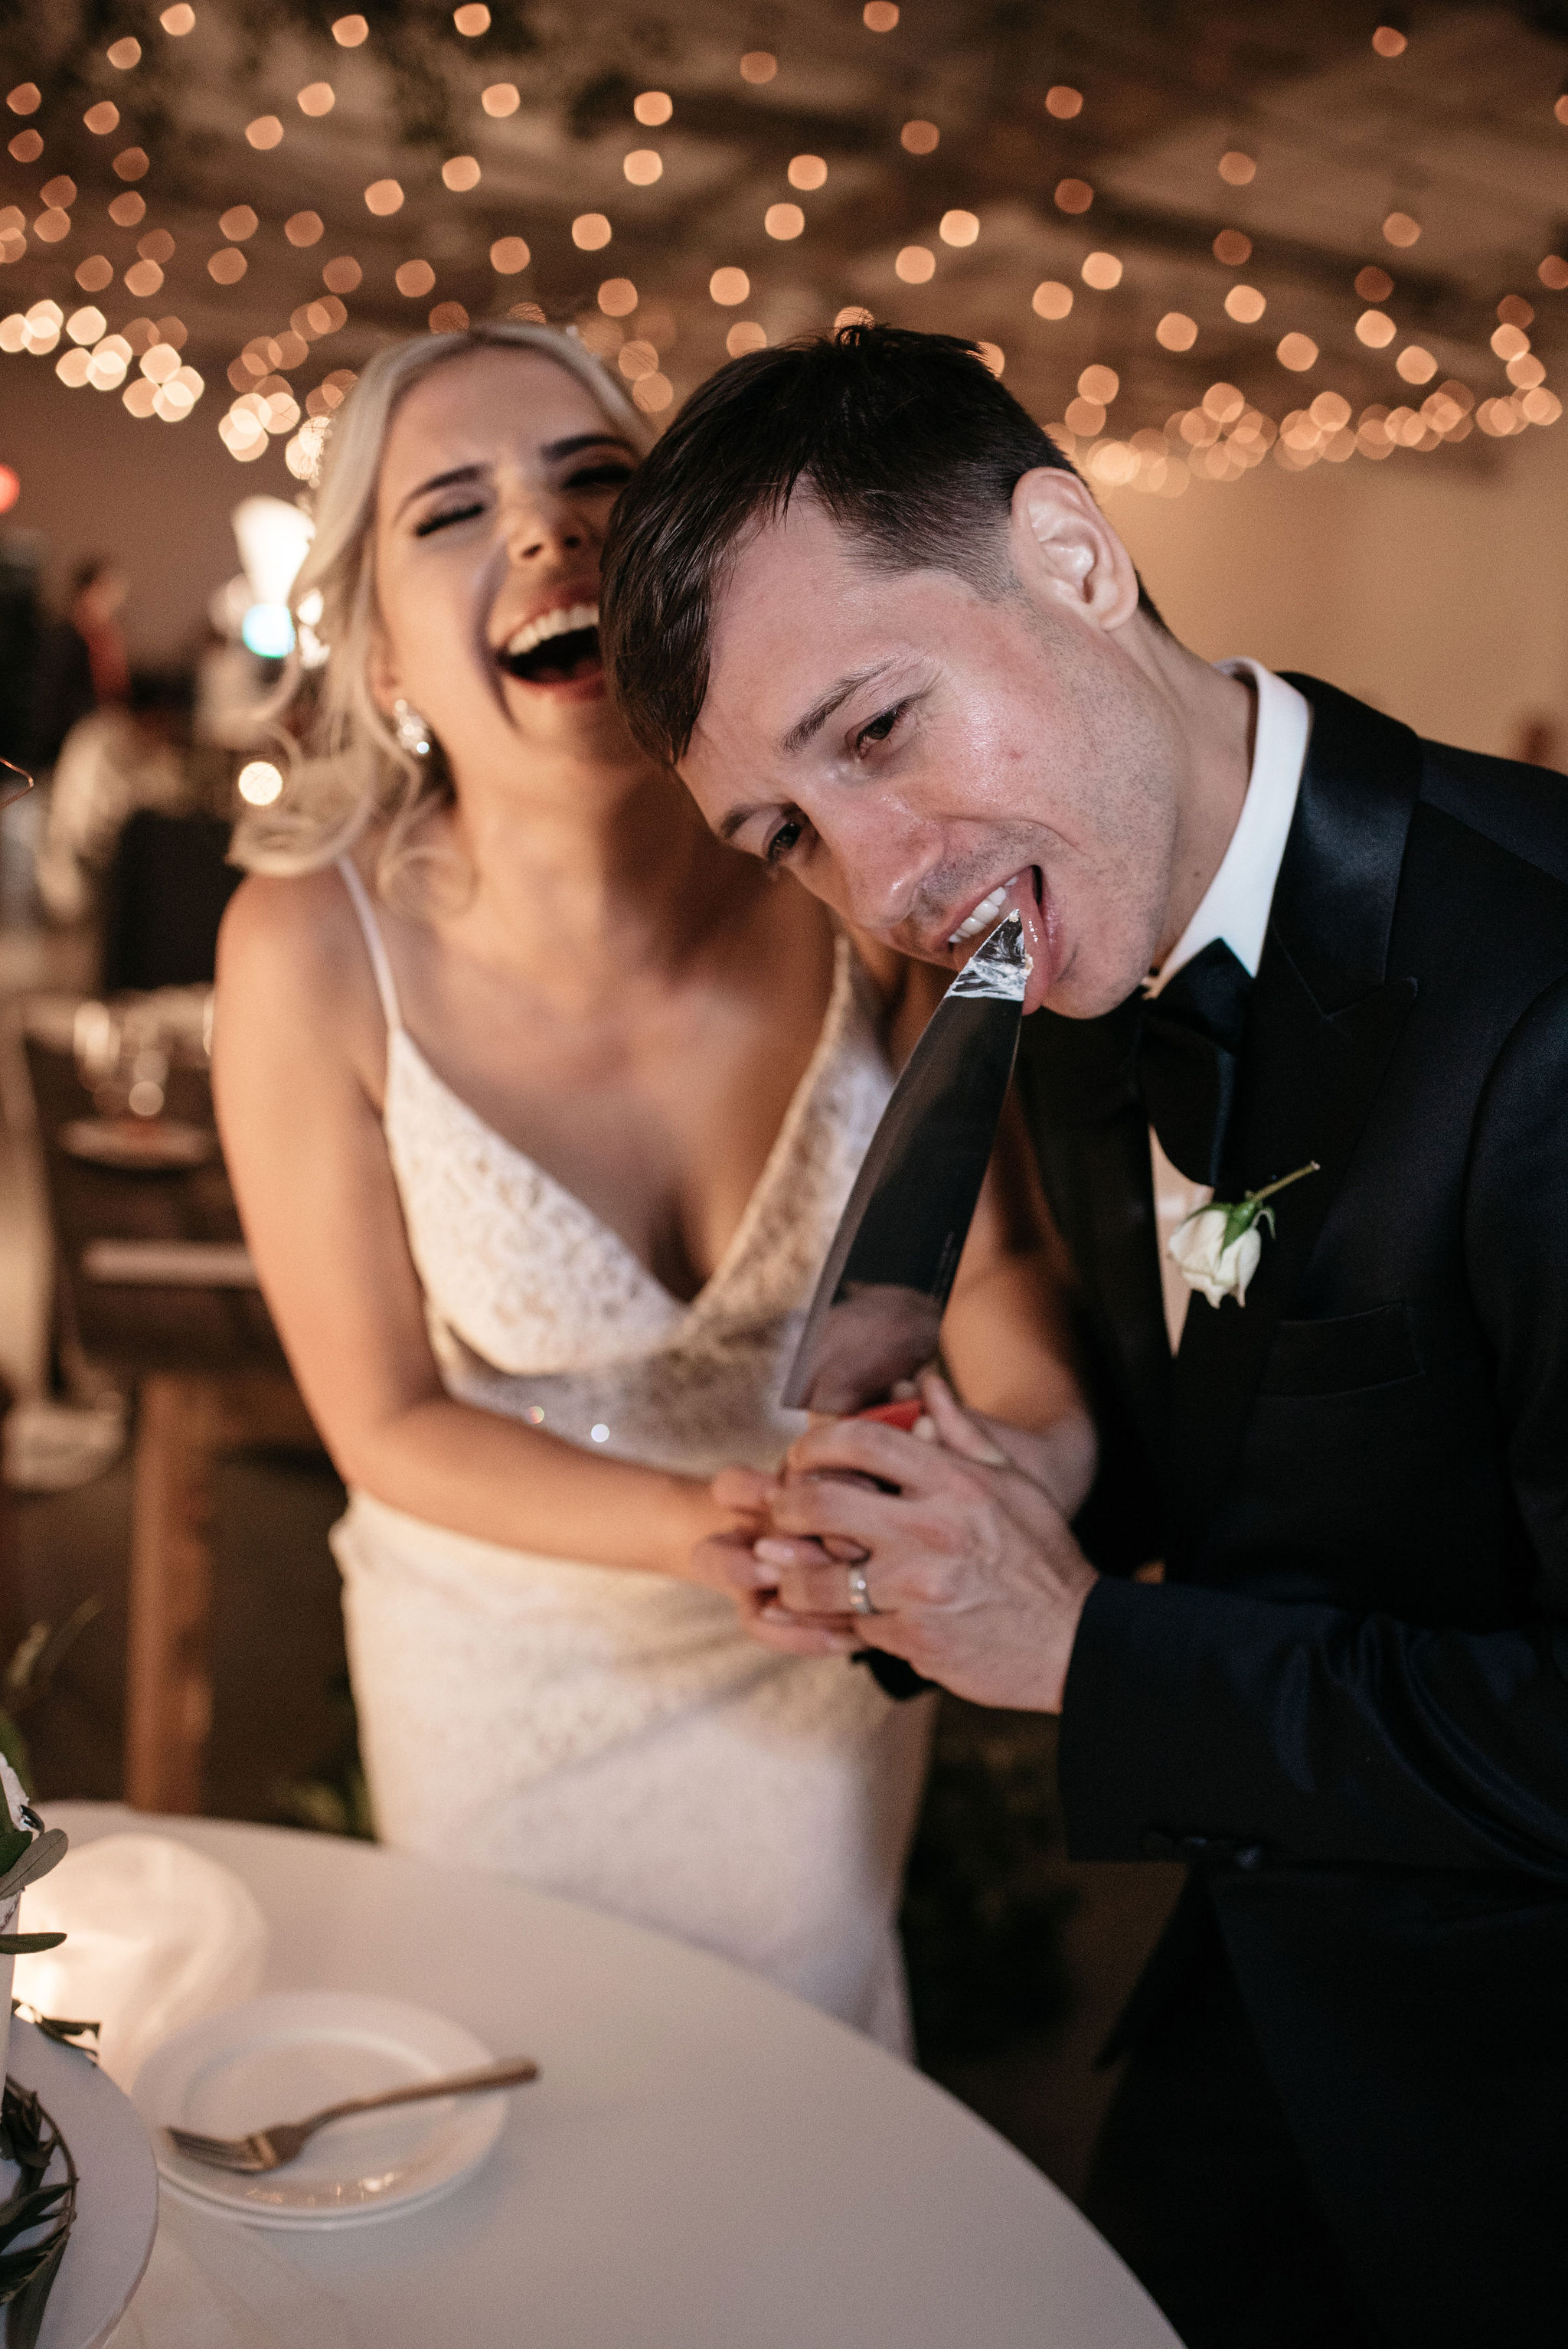 Cake Cutting Wedding Photos | Olive Photography Toronto